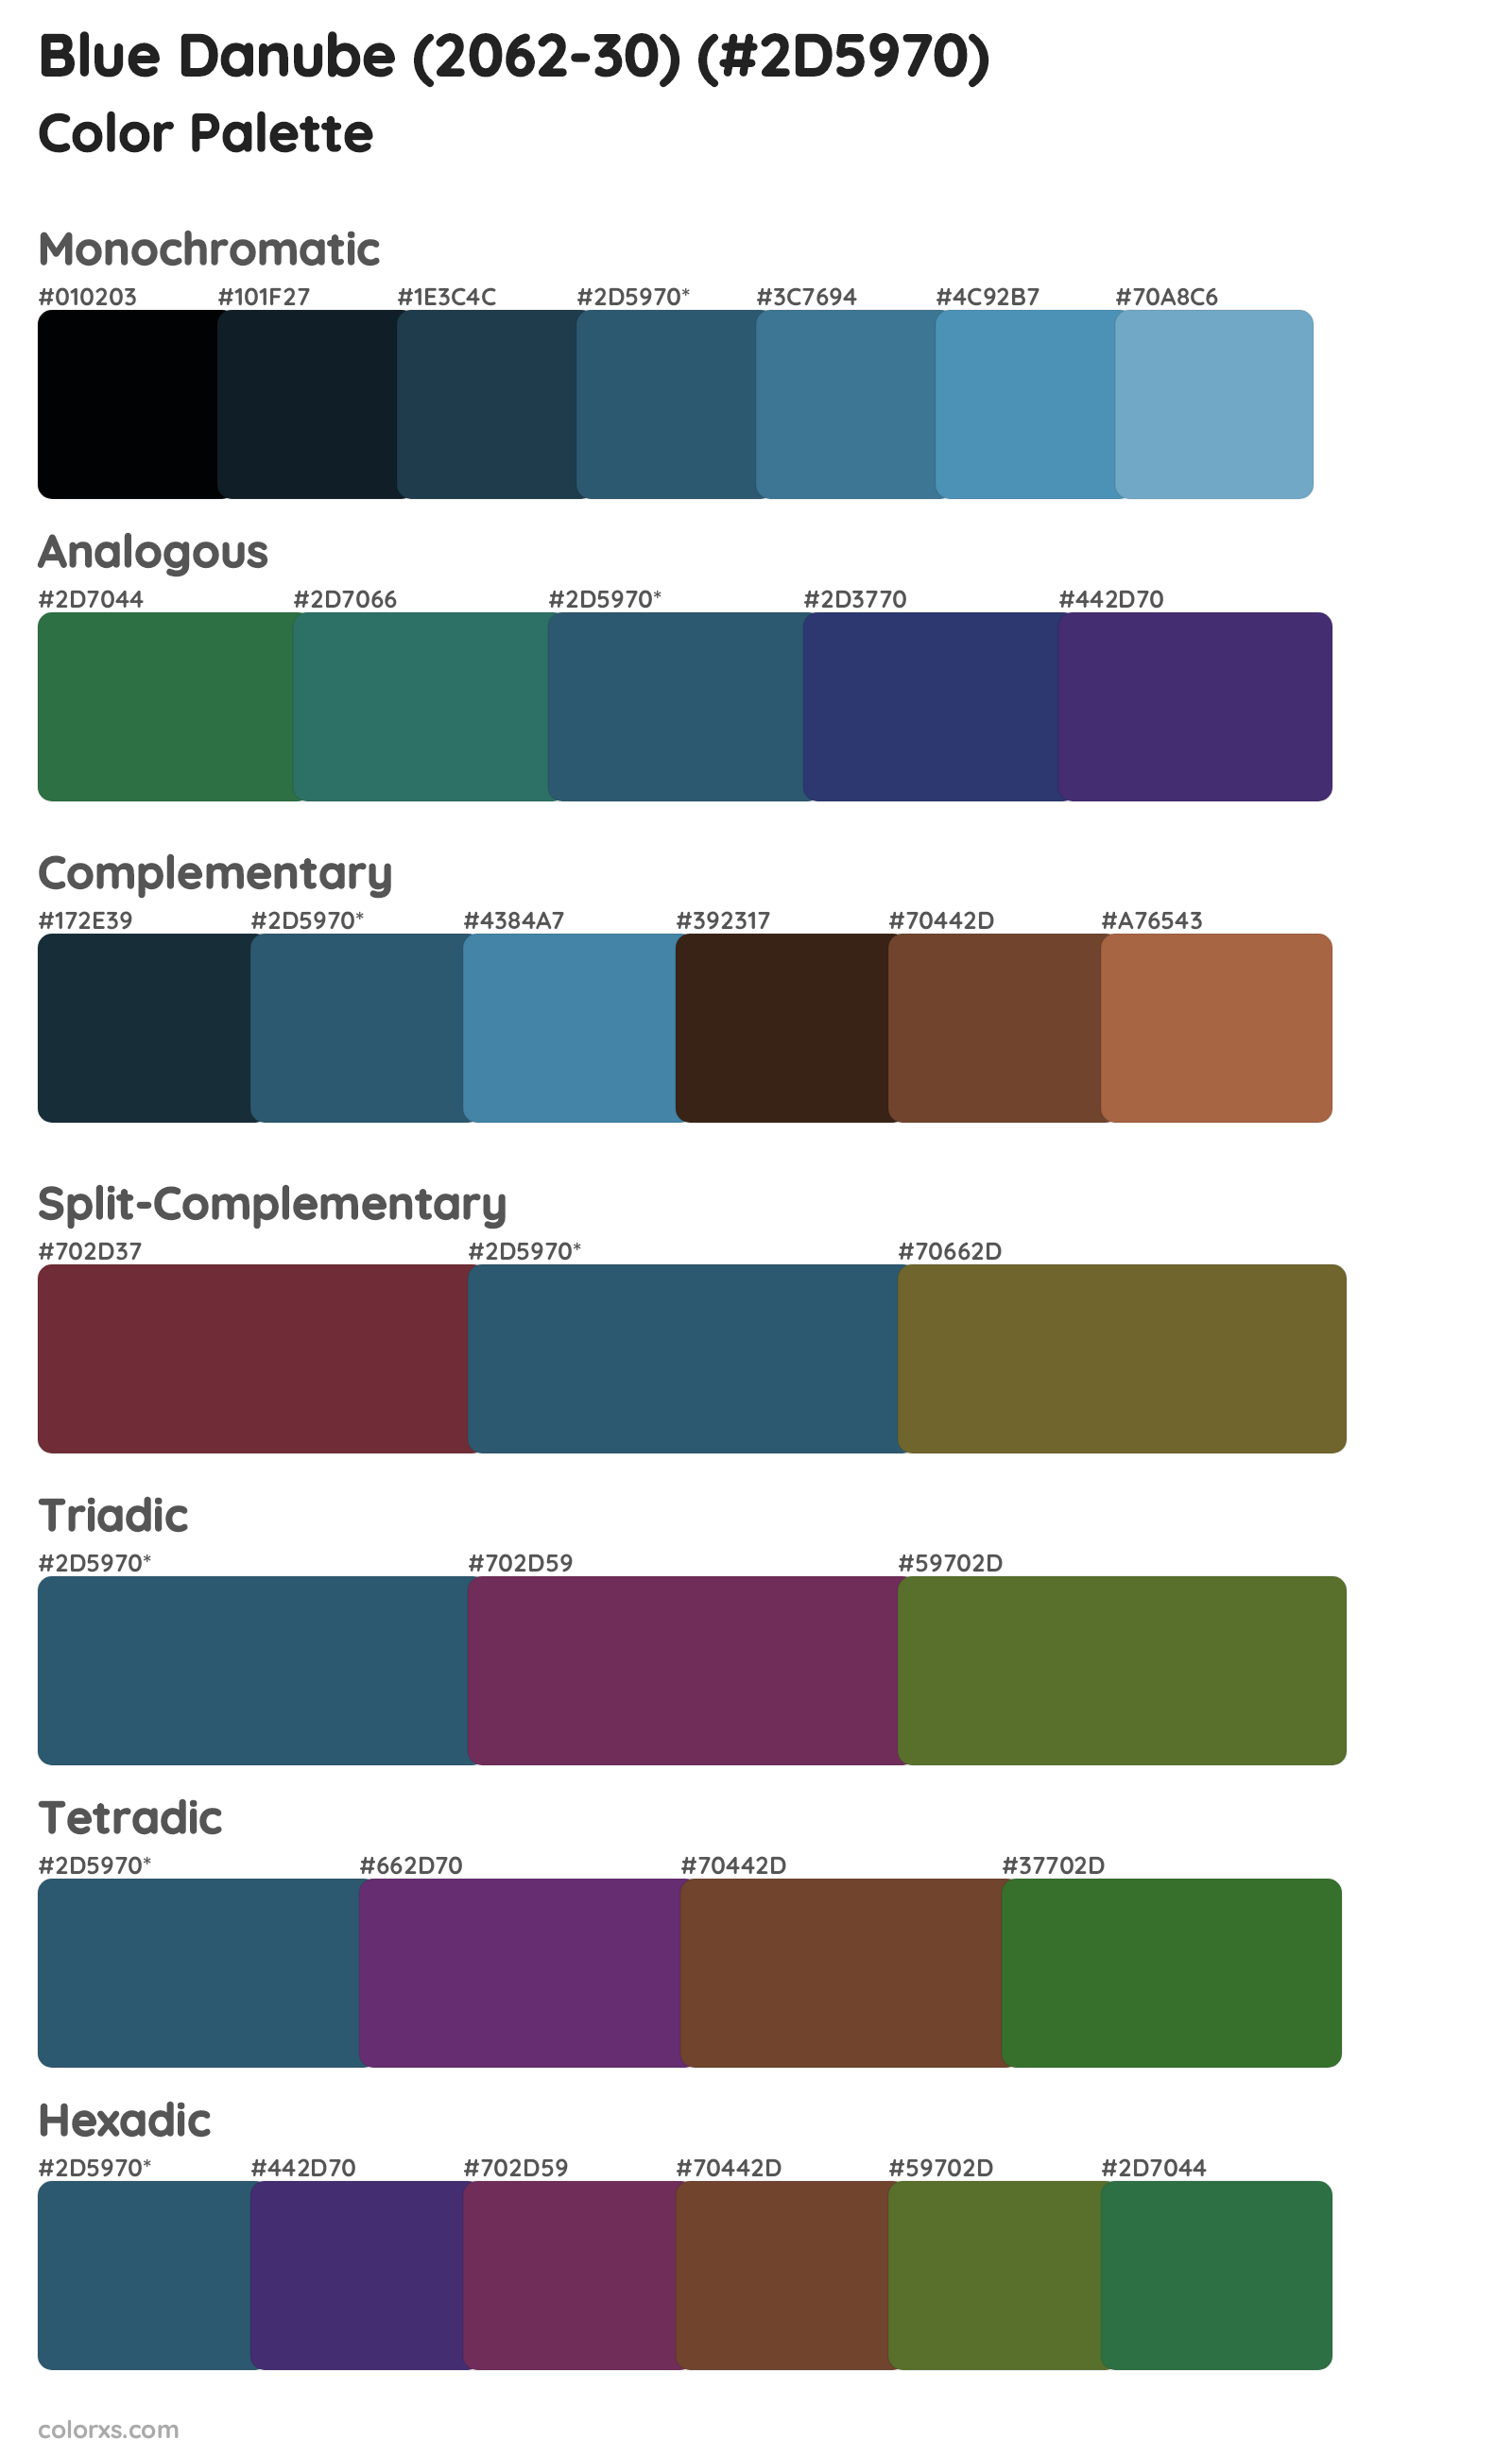 Blue Danube (2062-30) Color Scheme Palettes